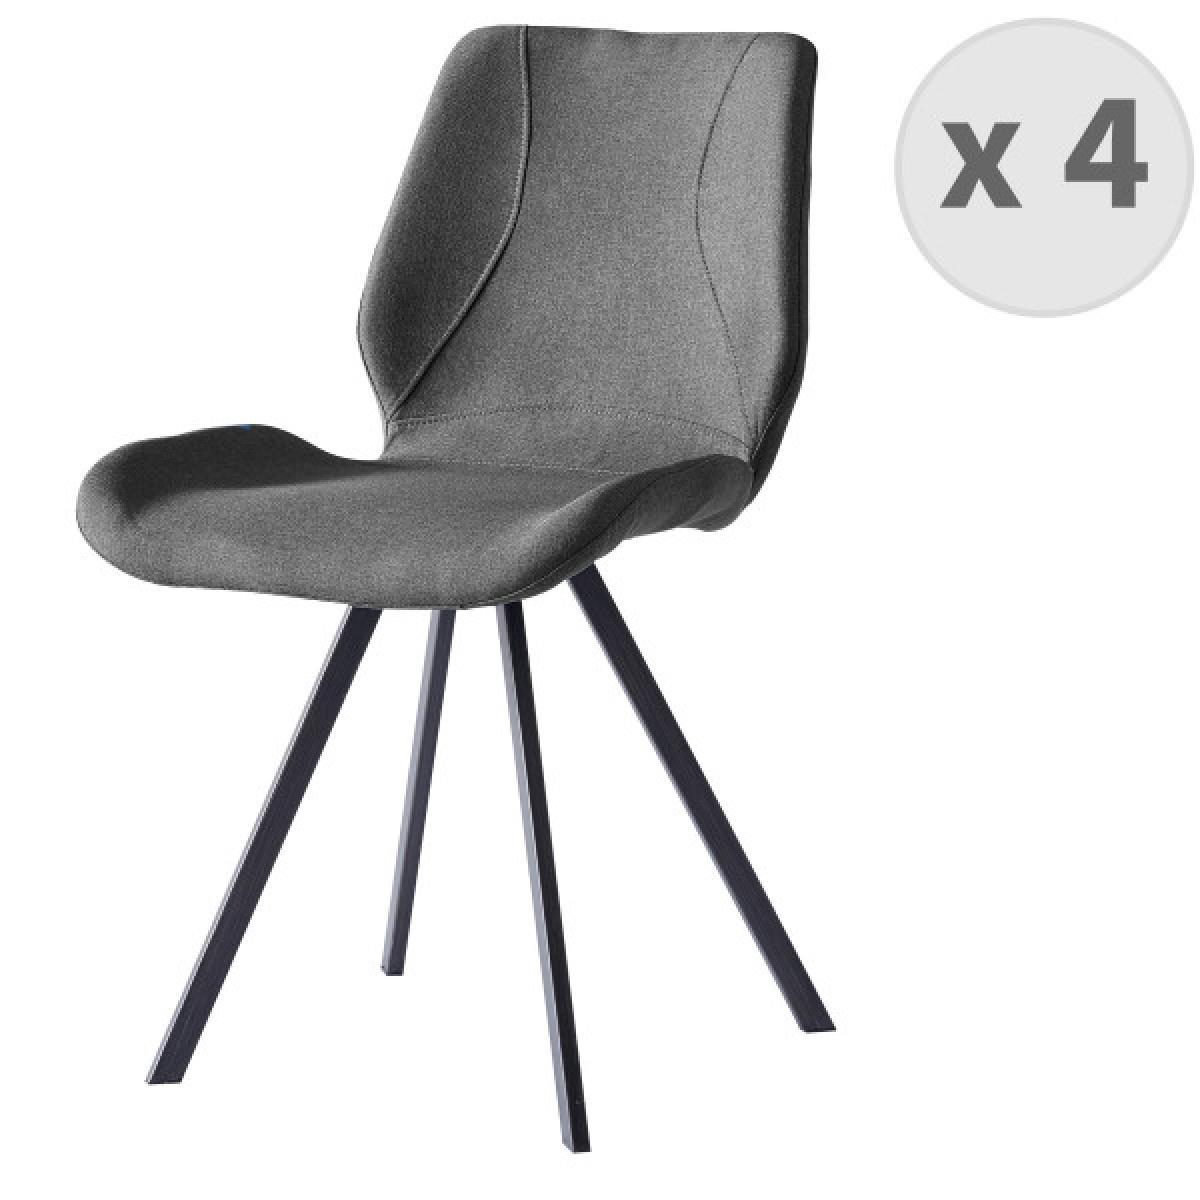 Moloo - HALIFAX-Chaise indus tissu gris pieds noir brossé (x4) - Chaises